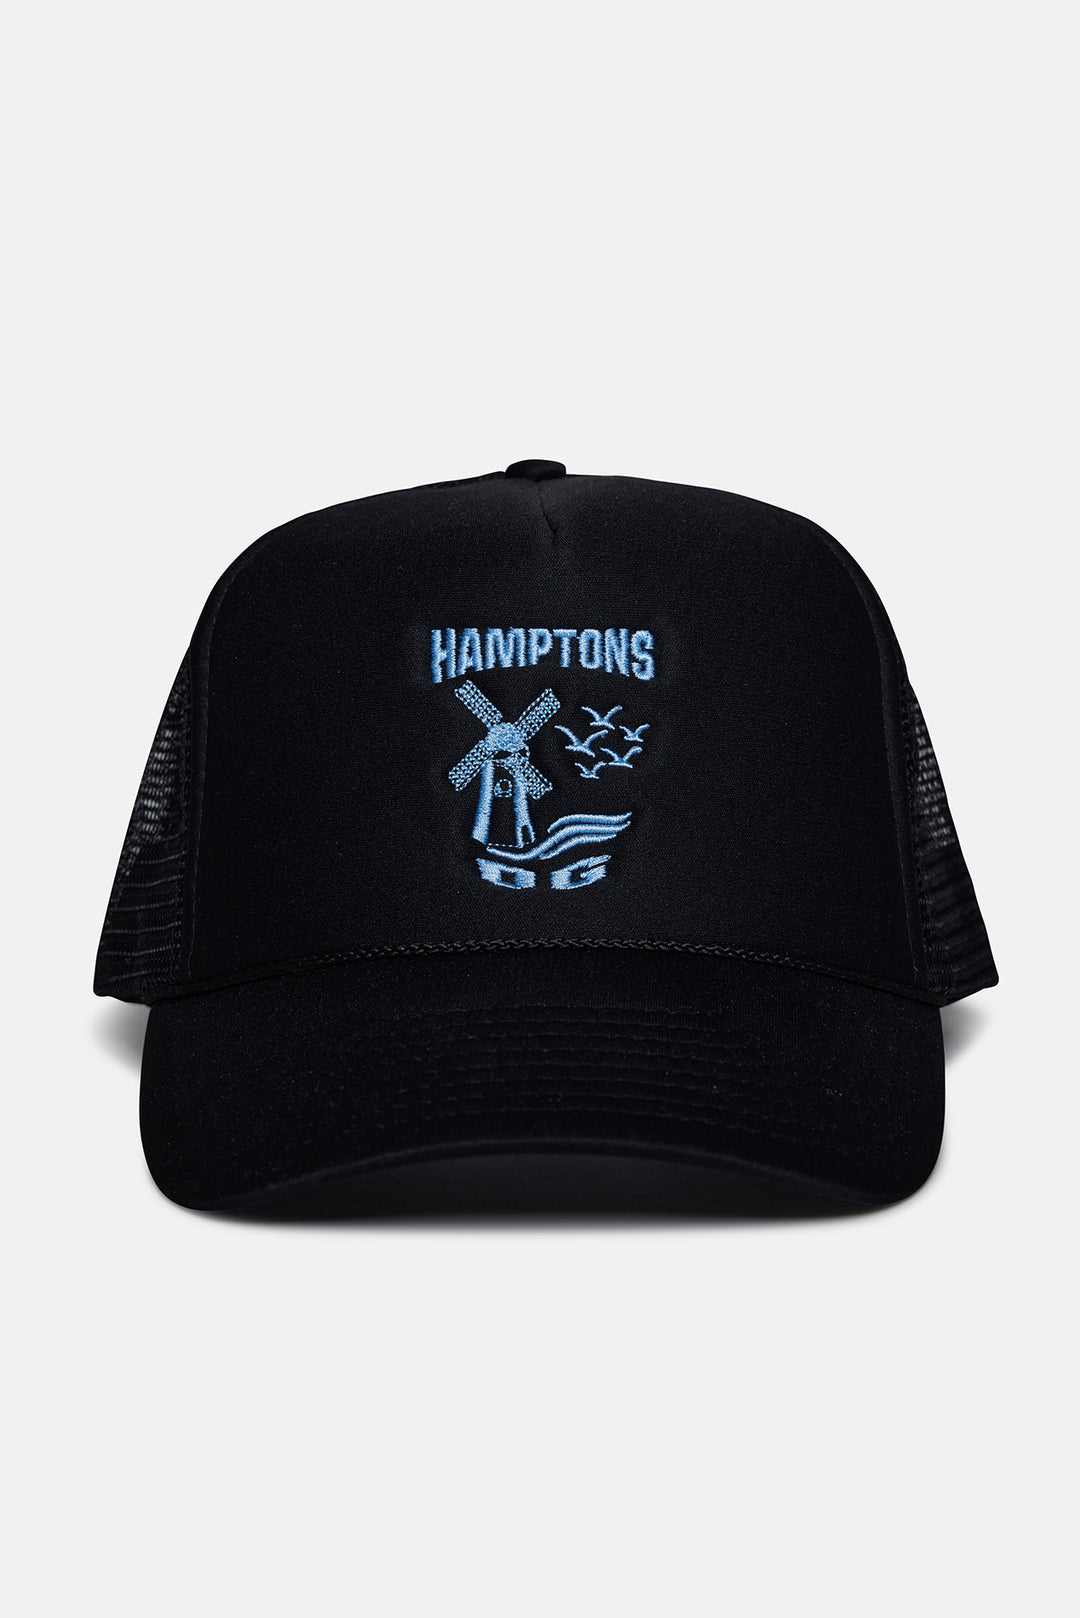 Hamptons OG Mesh Trucker Hat Black